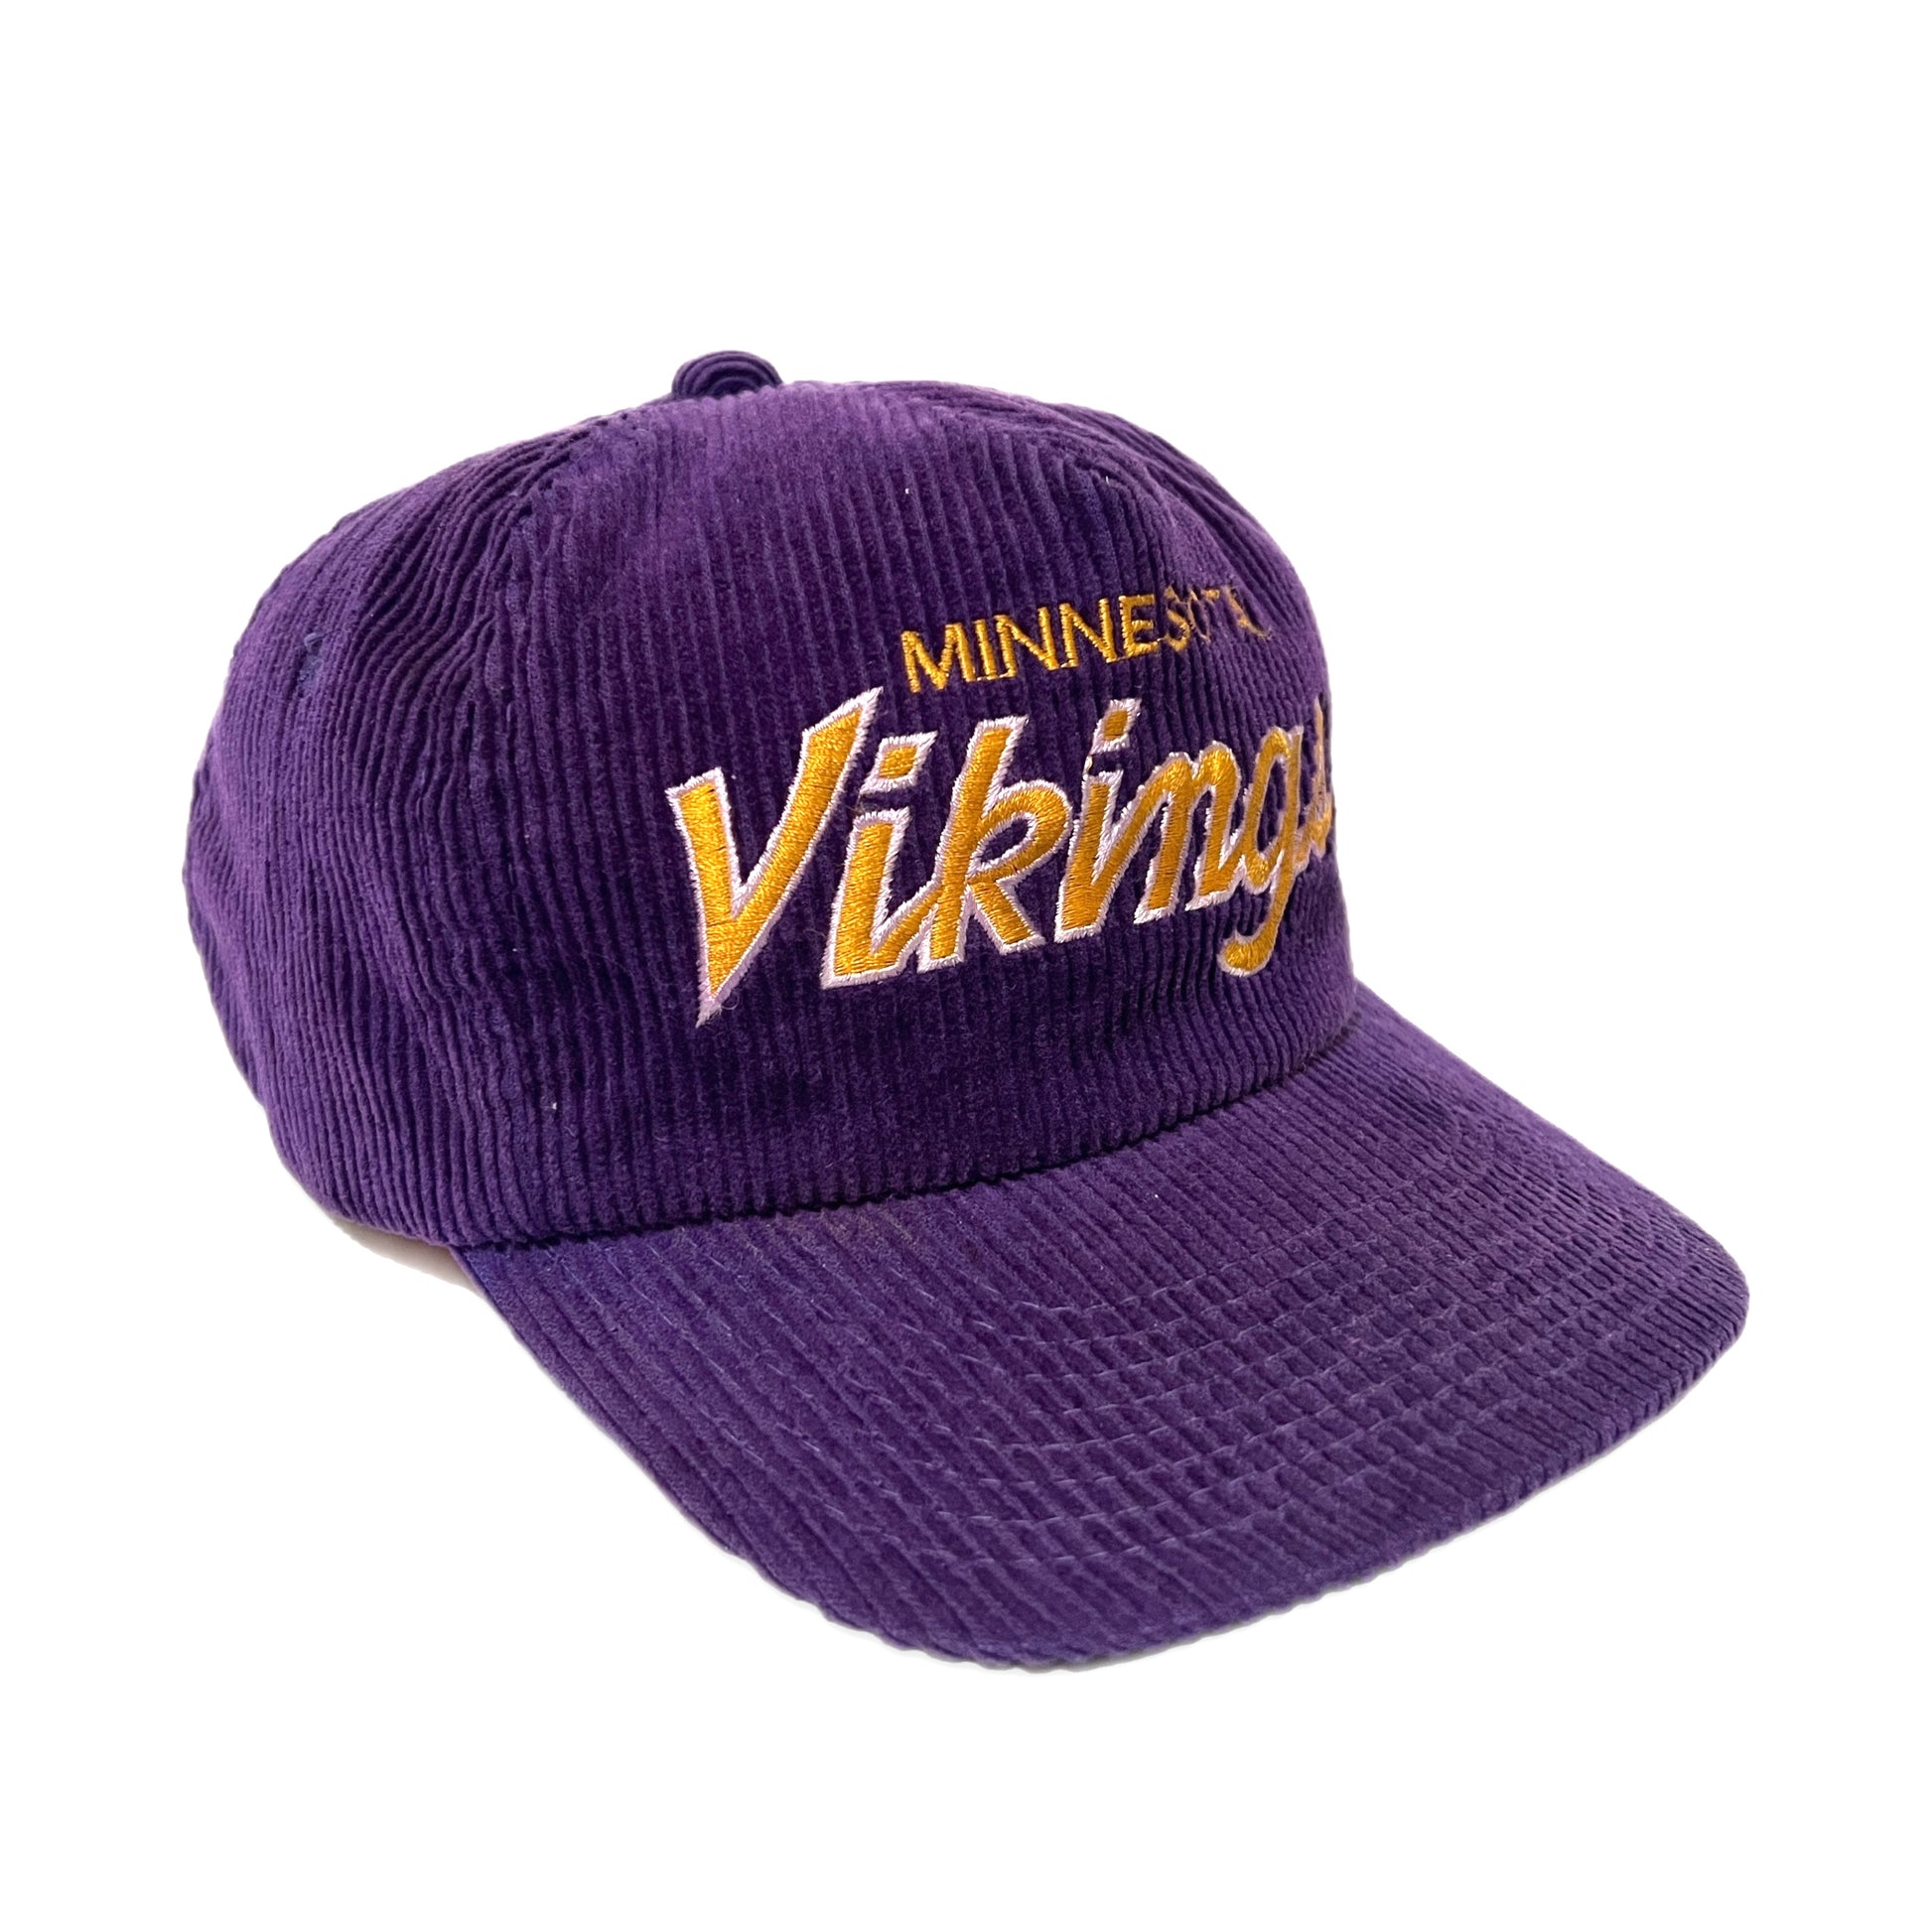 vintage minnesota vikings hat